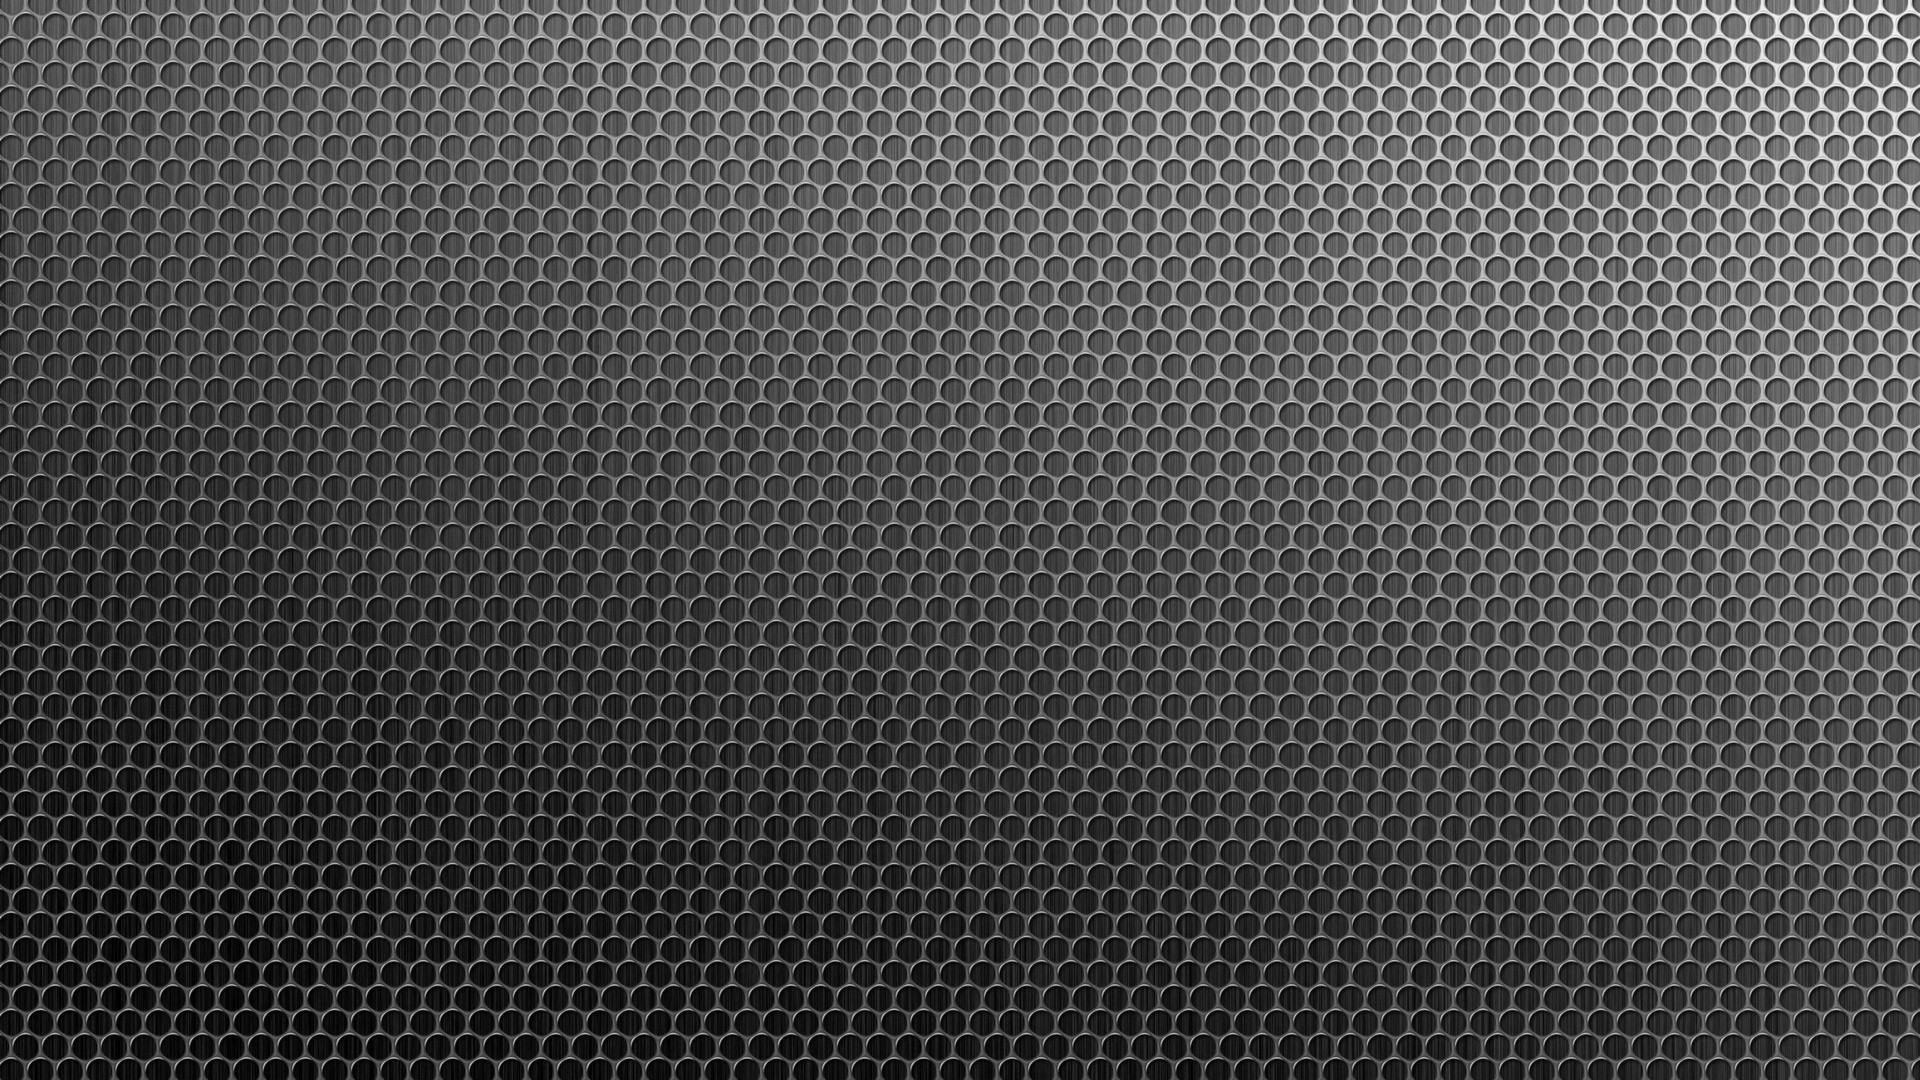  metal gray patterns metallic 1920x1080 wallpaper Wallpaper Free